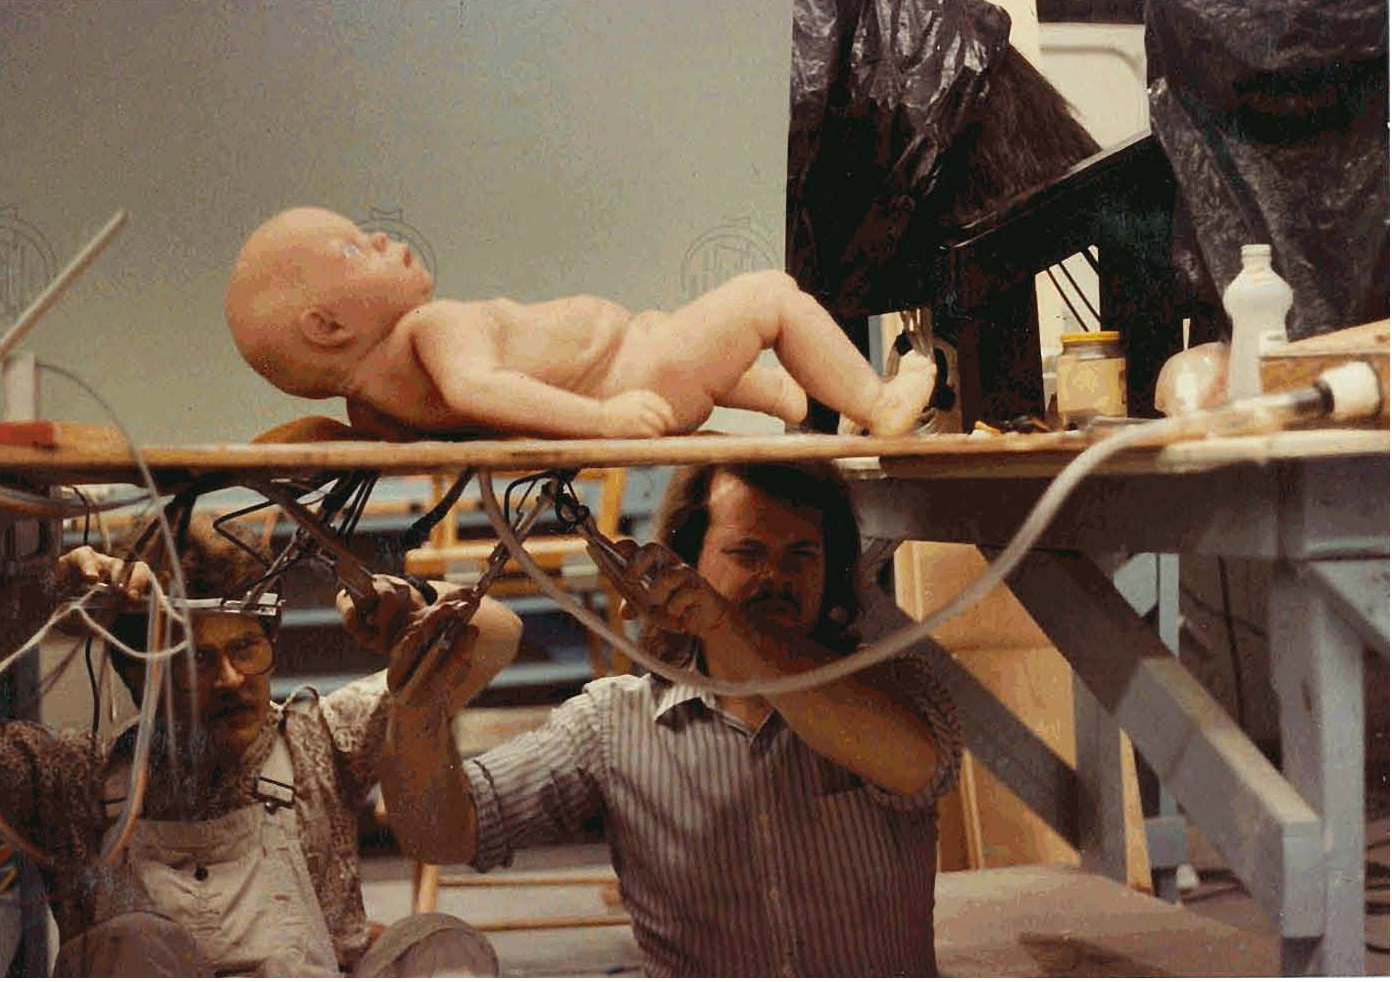 Starman (1984) Directed by John Carpenter. Rick Baker Studio. Starbaby 'hot-melt' puppet test. Mark Wilson and Tim Lawrence.